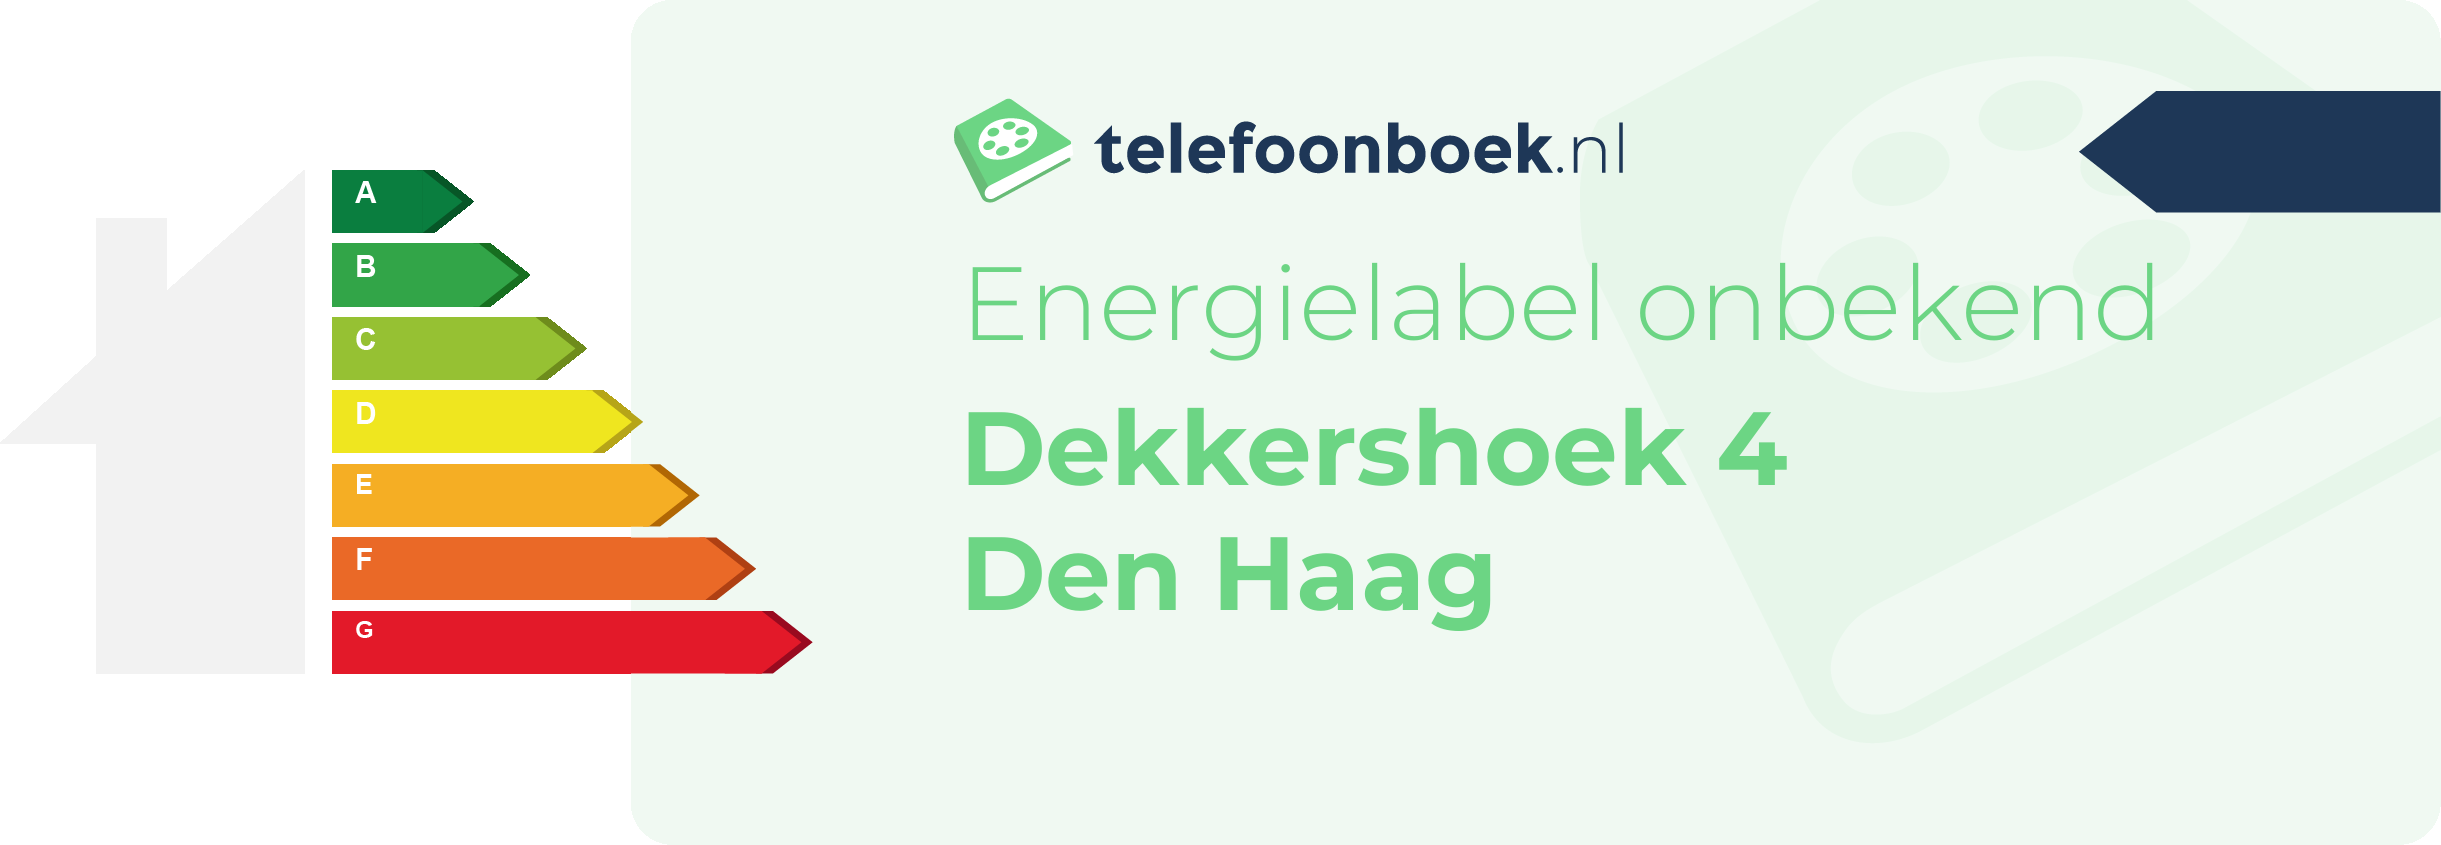 Energielabel Dekkershoek 4 Den Haag